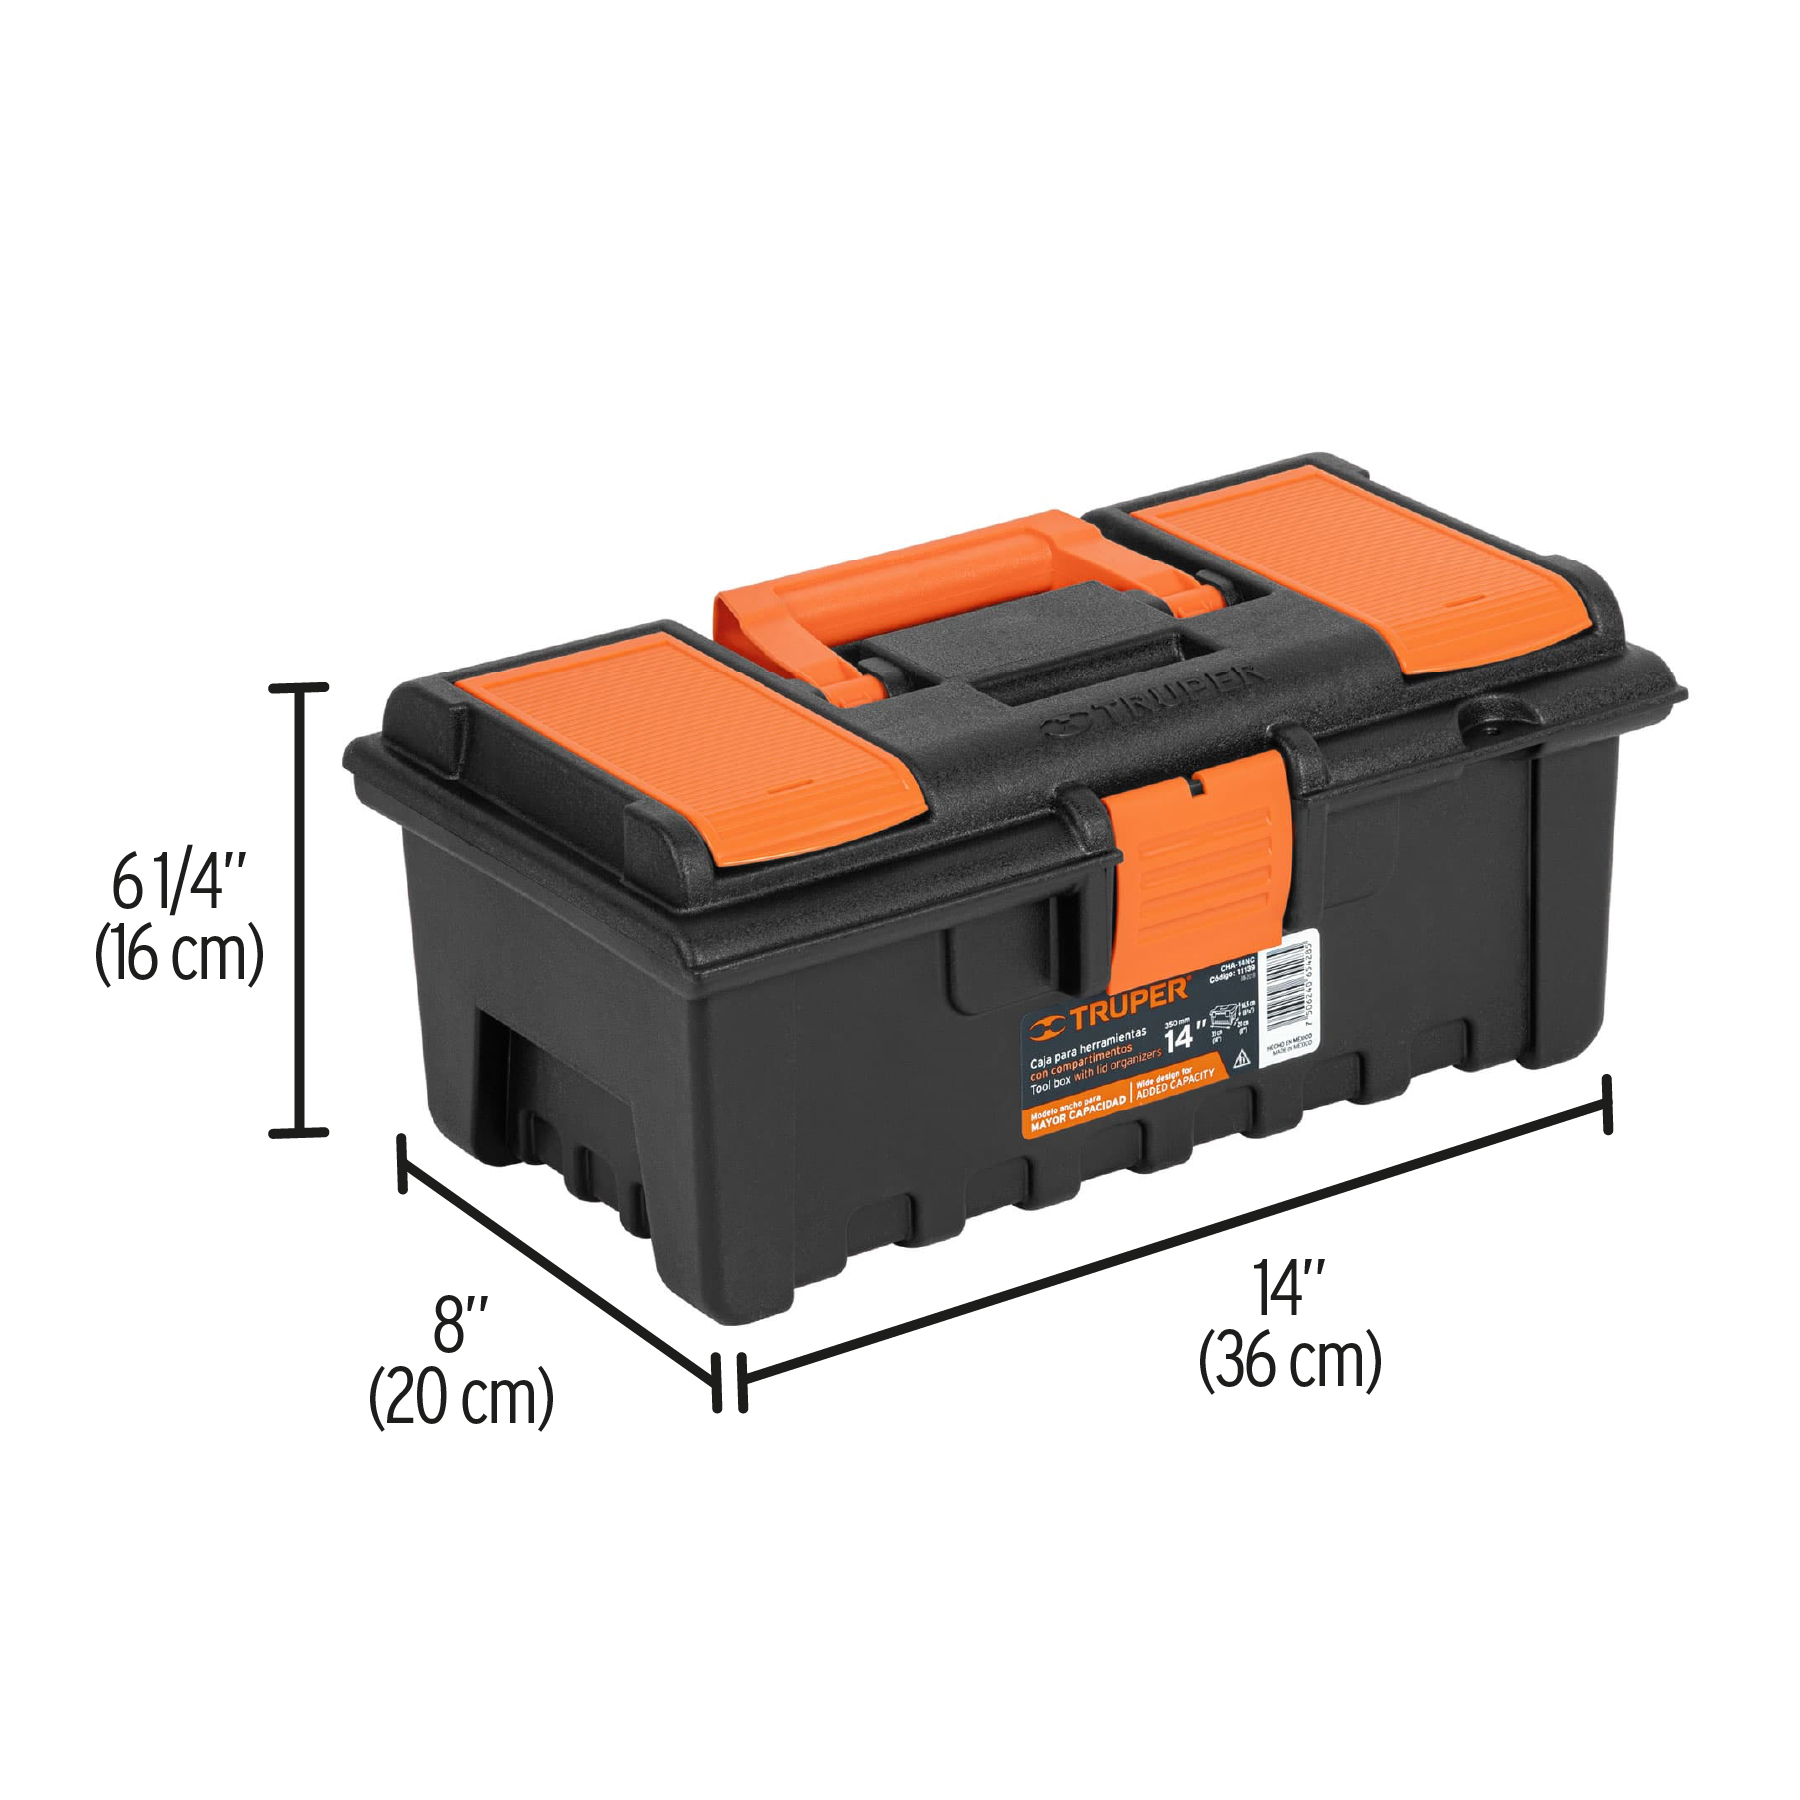 Caja para herramienta de 14 con compartimentos Truper